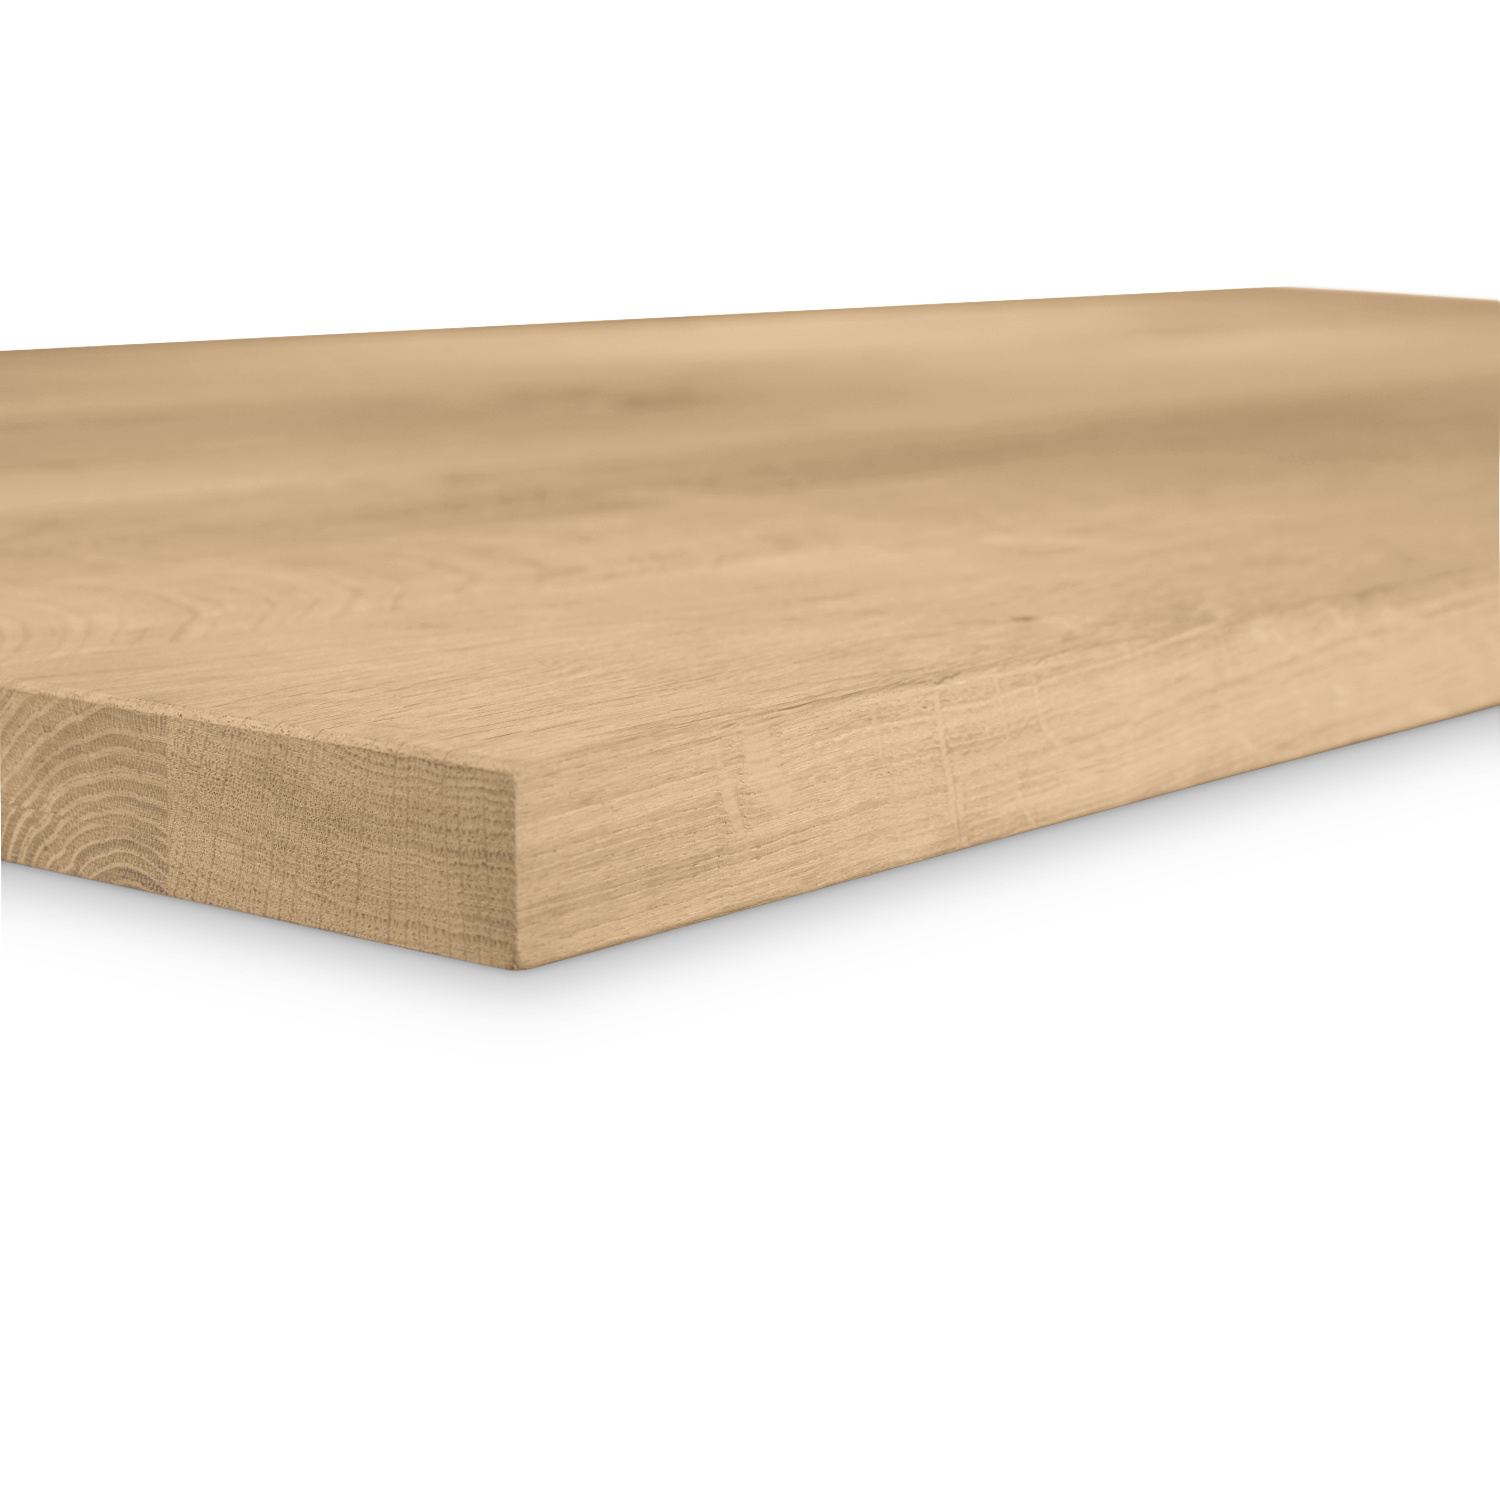  Eiken tafelblad - 4 cm dik (1-laag) - Diverse afmetingen - rustiek Europees eikenhout - met brede lamellen (circa 10-12 cm) - verlijmd kd 8-12%